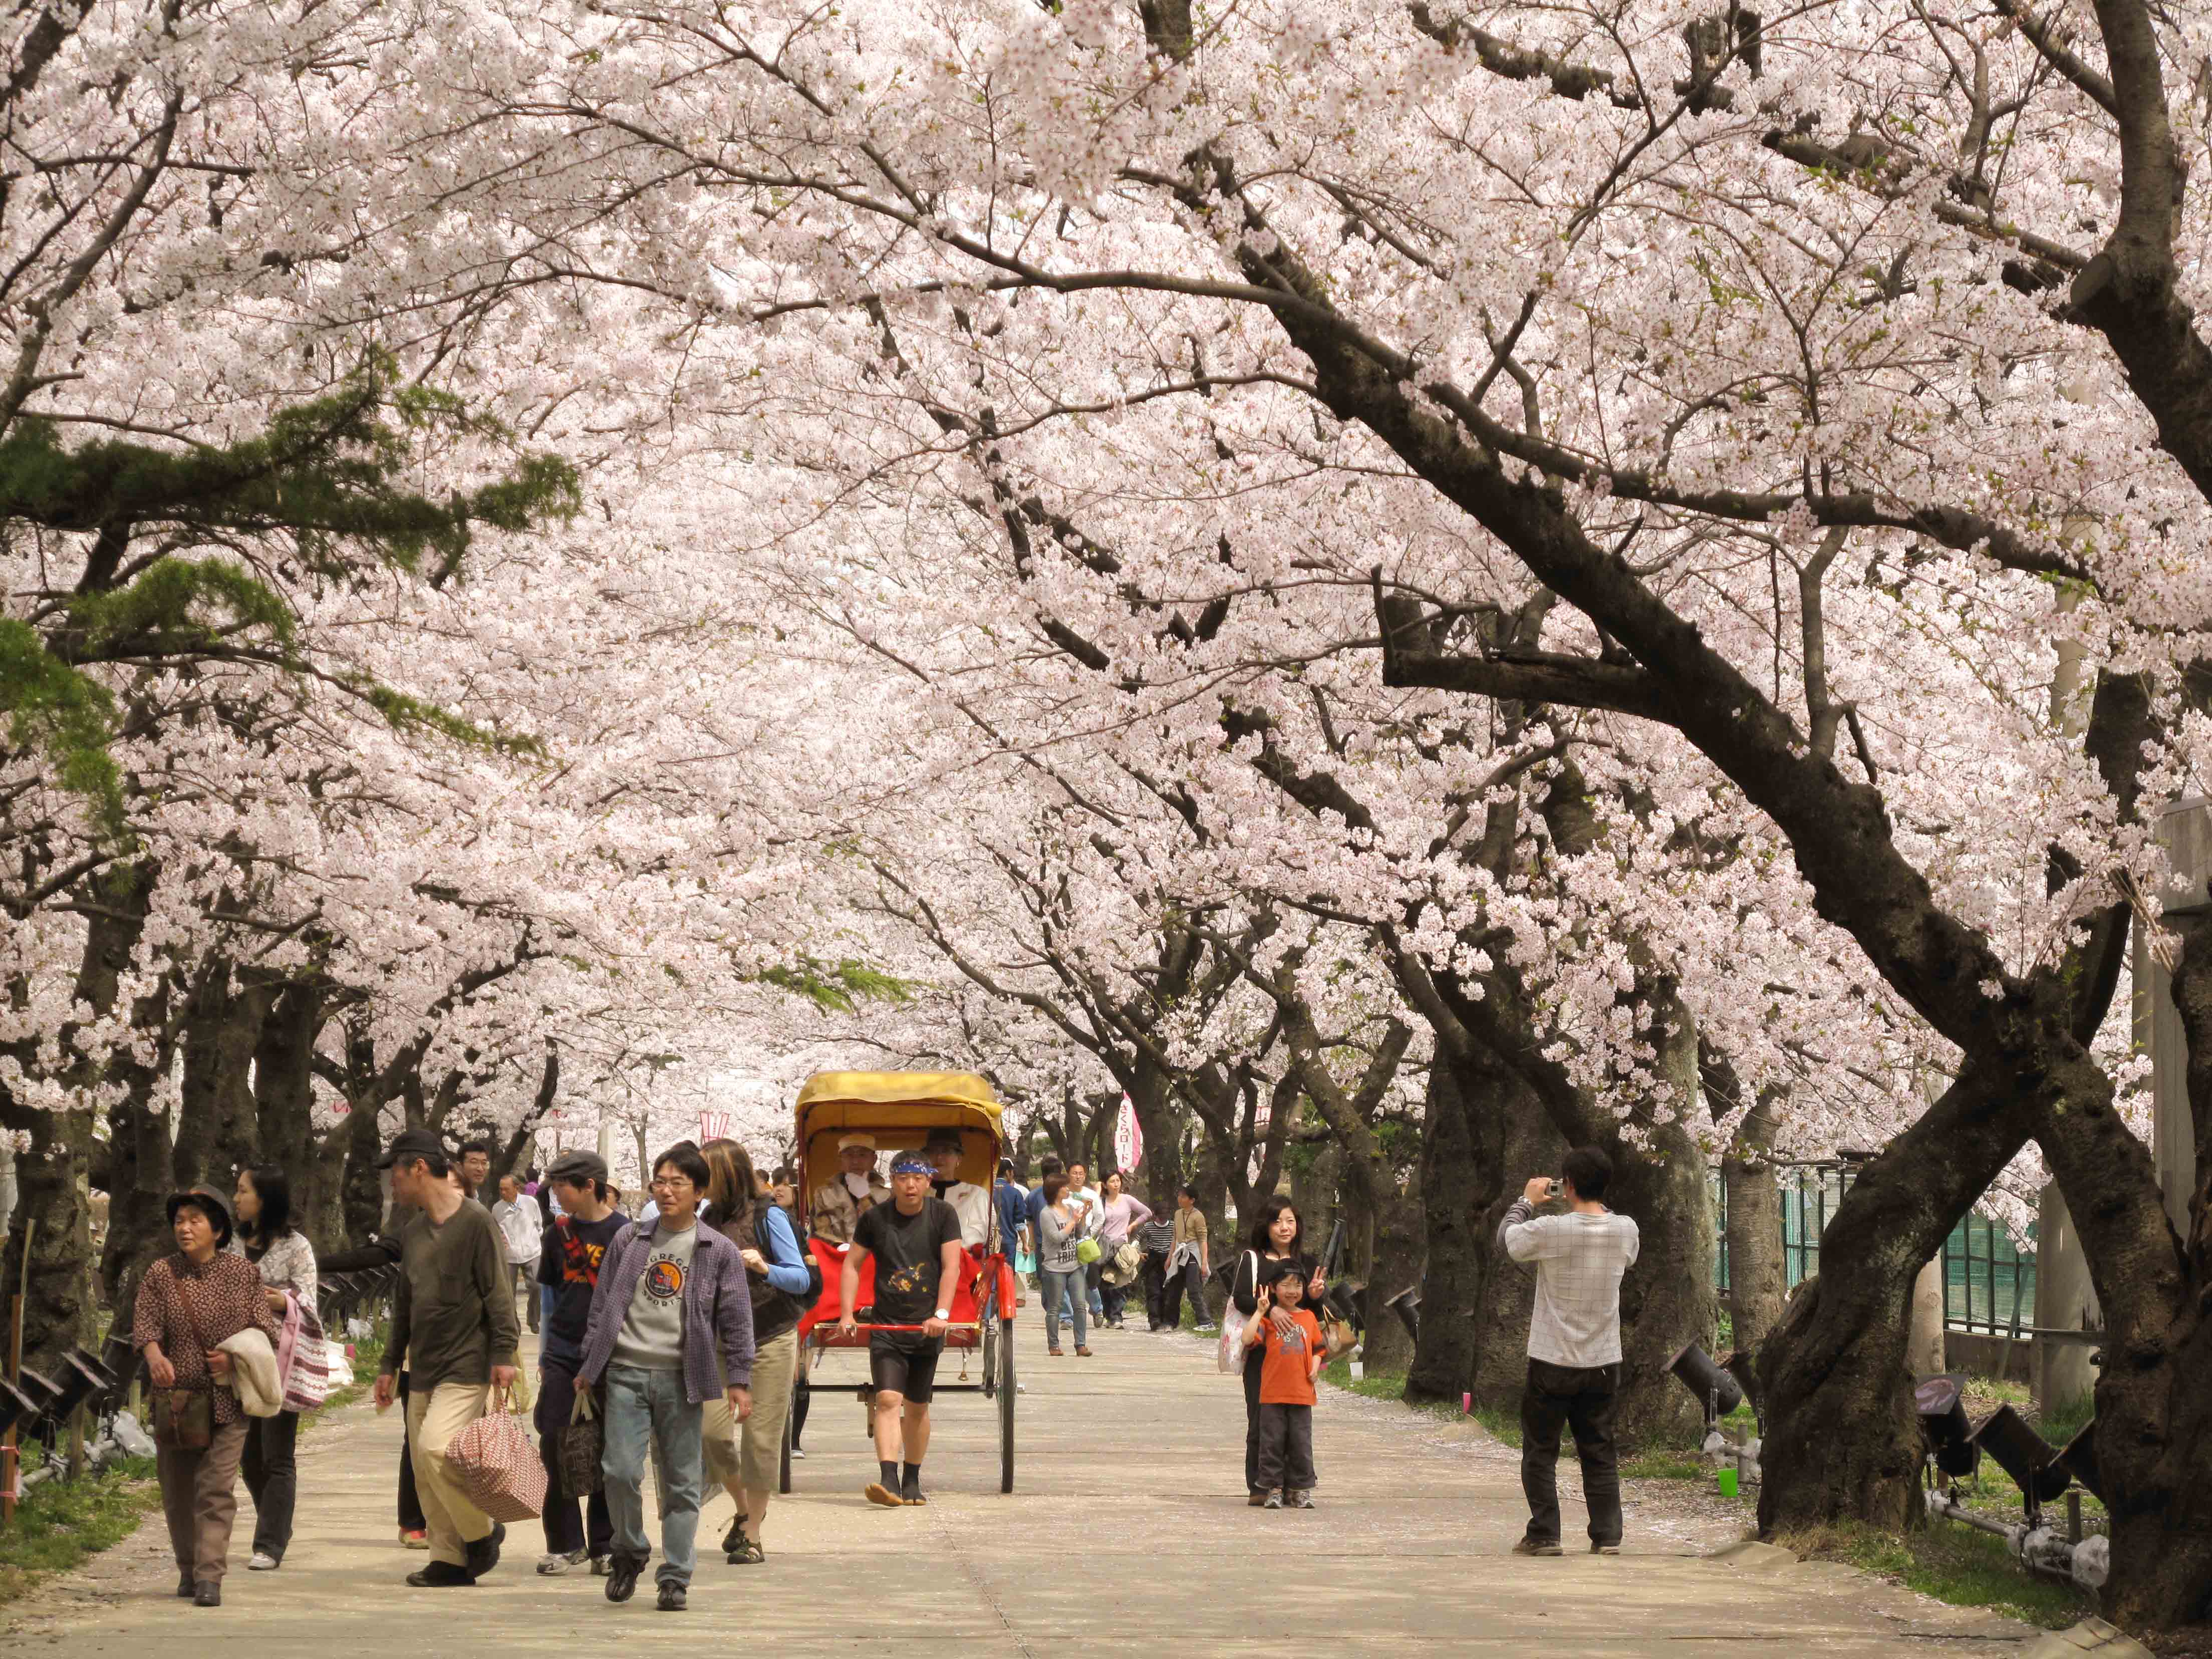 Tour du lịch Nhật Bản ngắm hoa anh đào được nhiều khách du lịch Việt Nam lựa chọn.